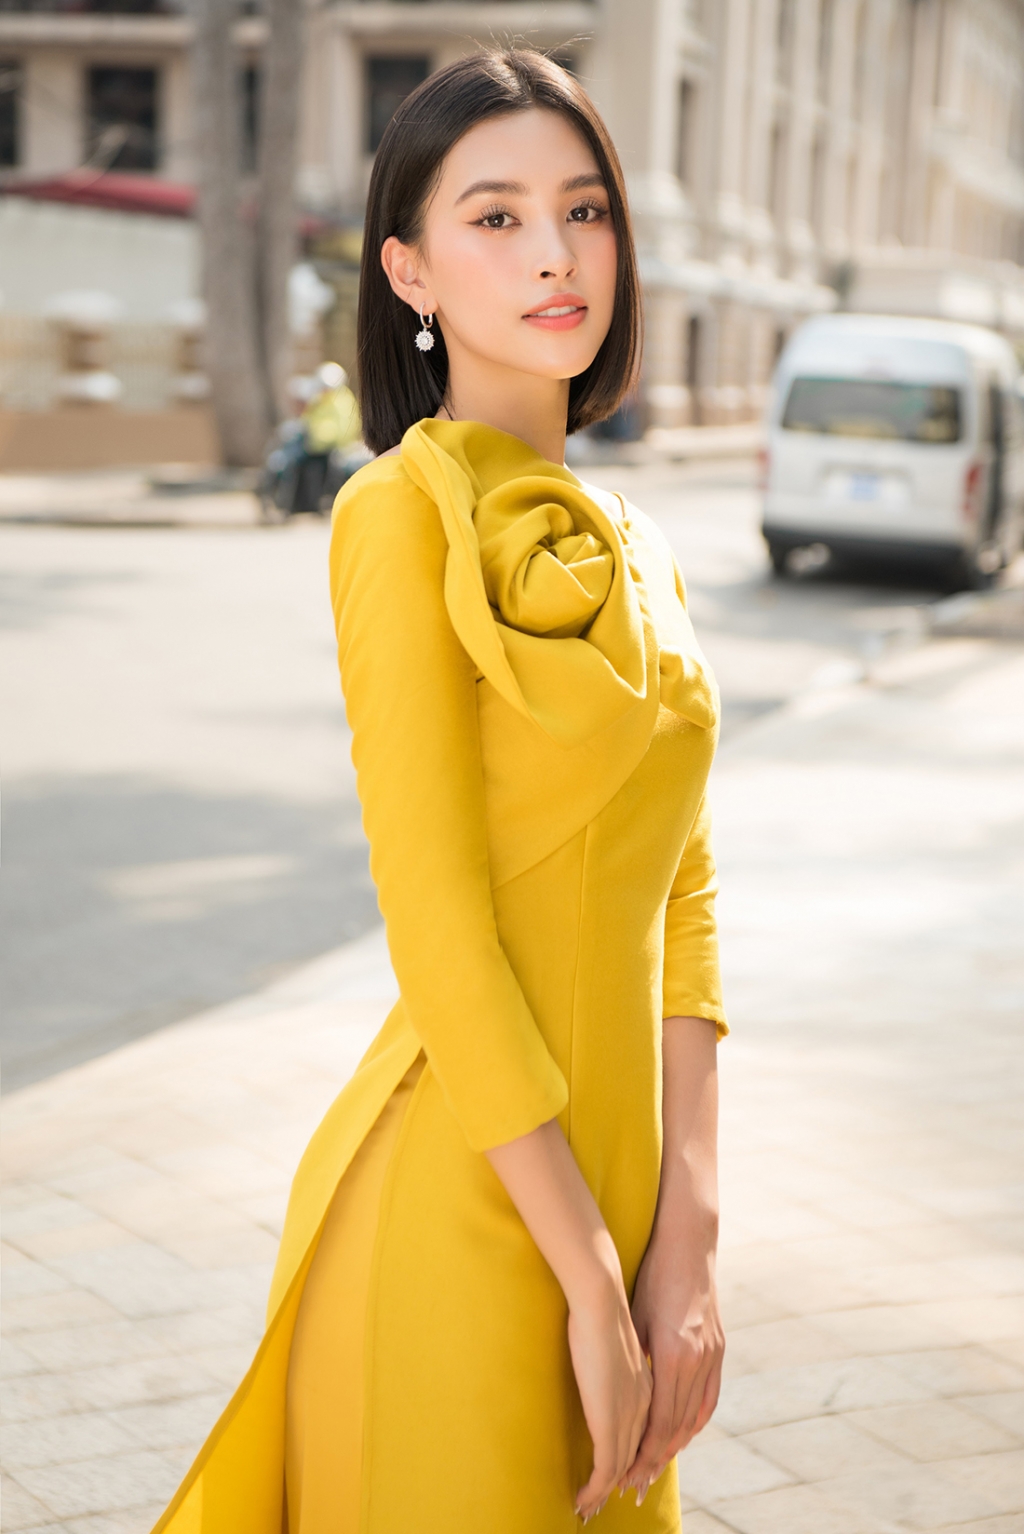 Tóc ngắn diện áo dài, Tiểu Vy xinh tươi cạnh Hoa hậu Đỗ Mỹ Linh